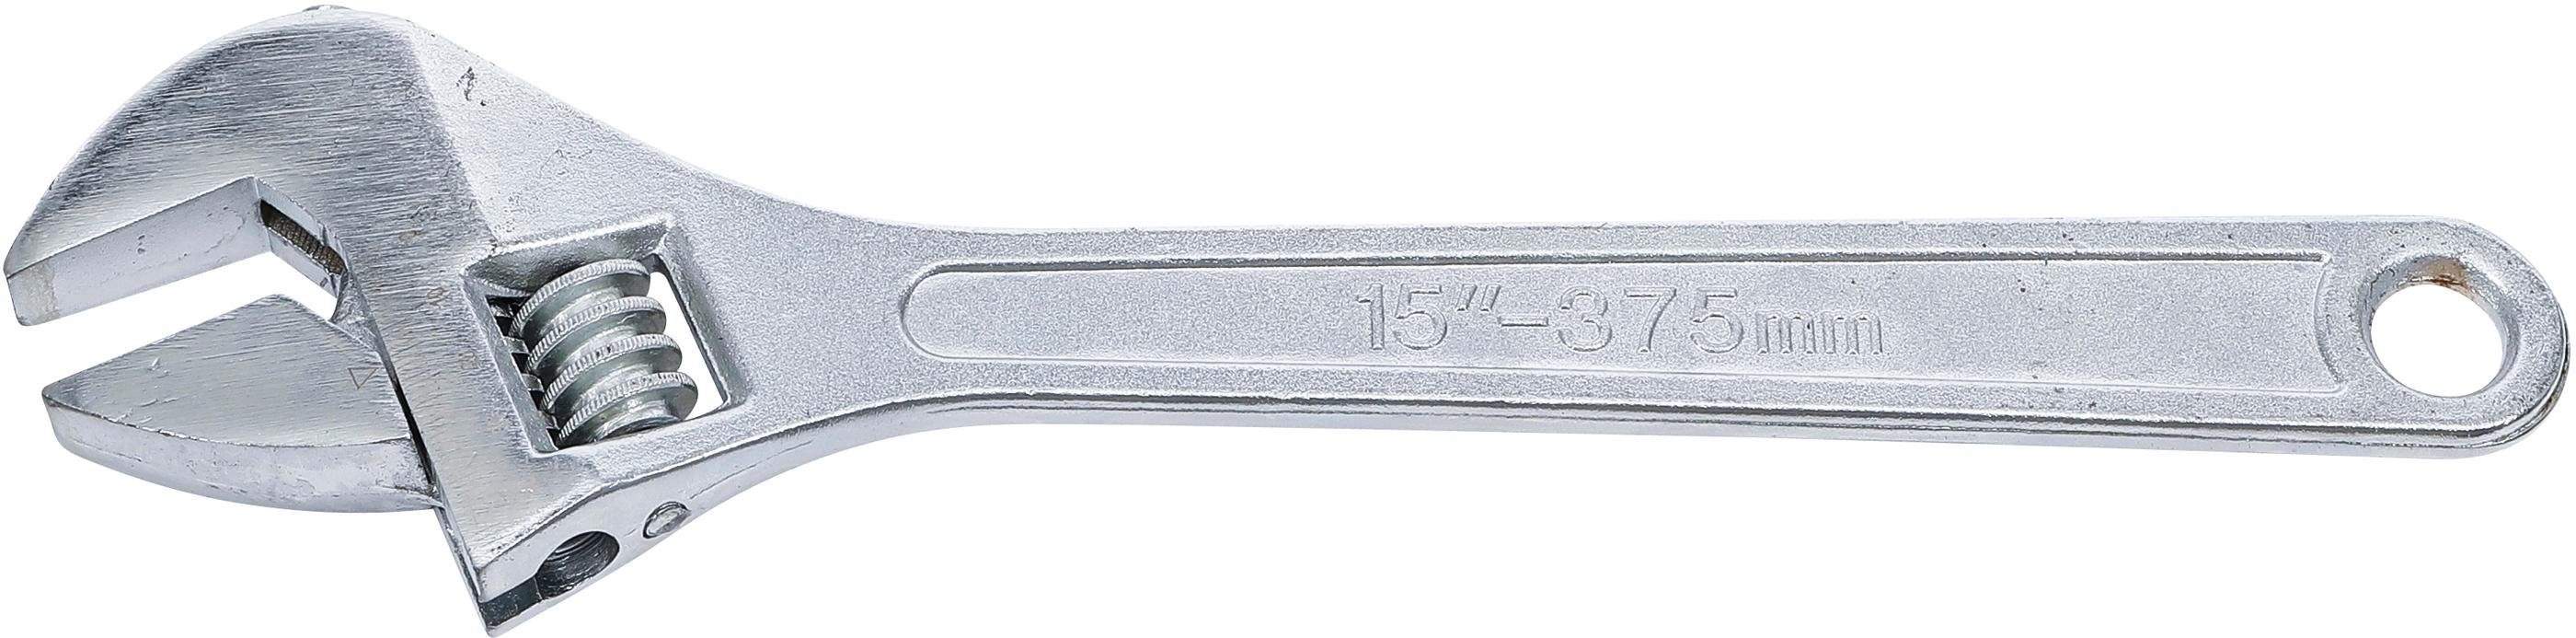 BGS technic Maulschlüssel Rollgabelschlüssel, 375 mm, 40 mm